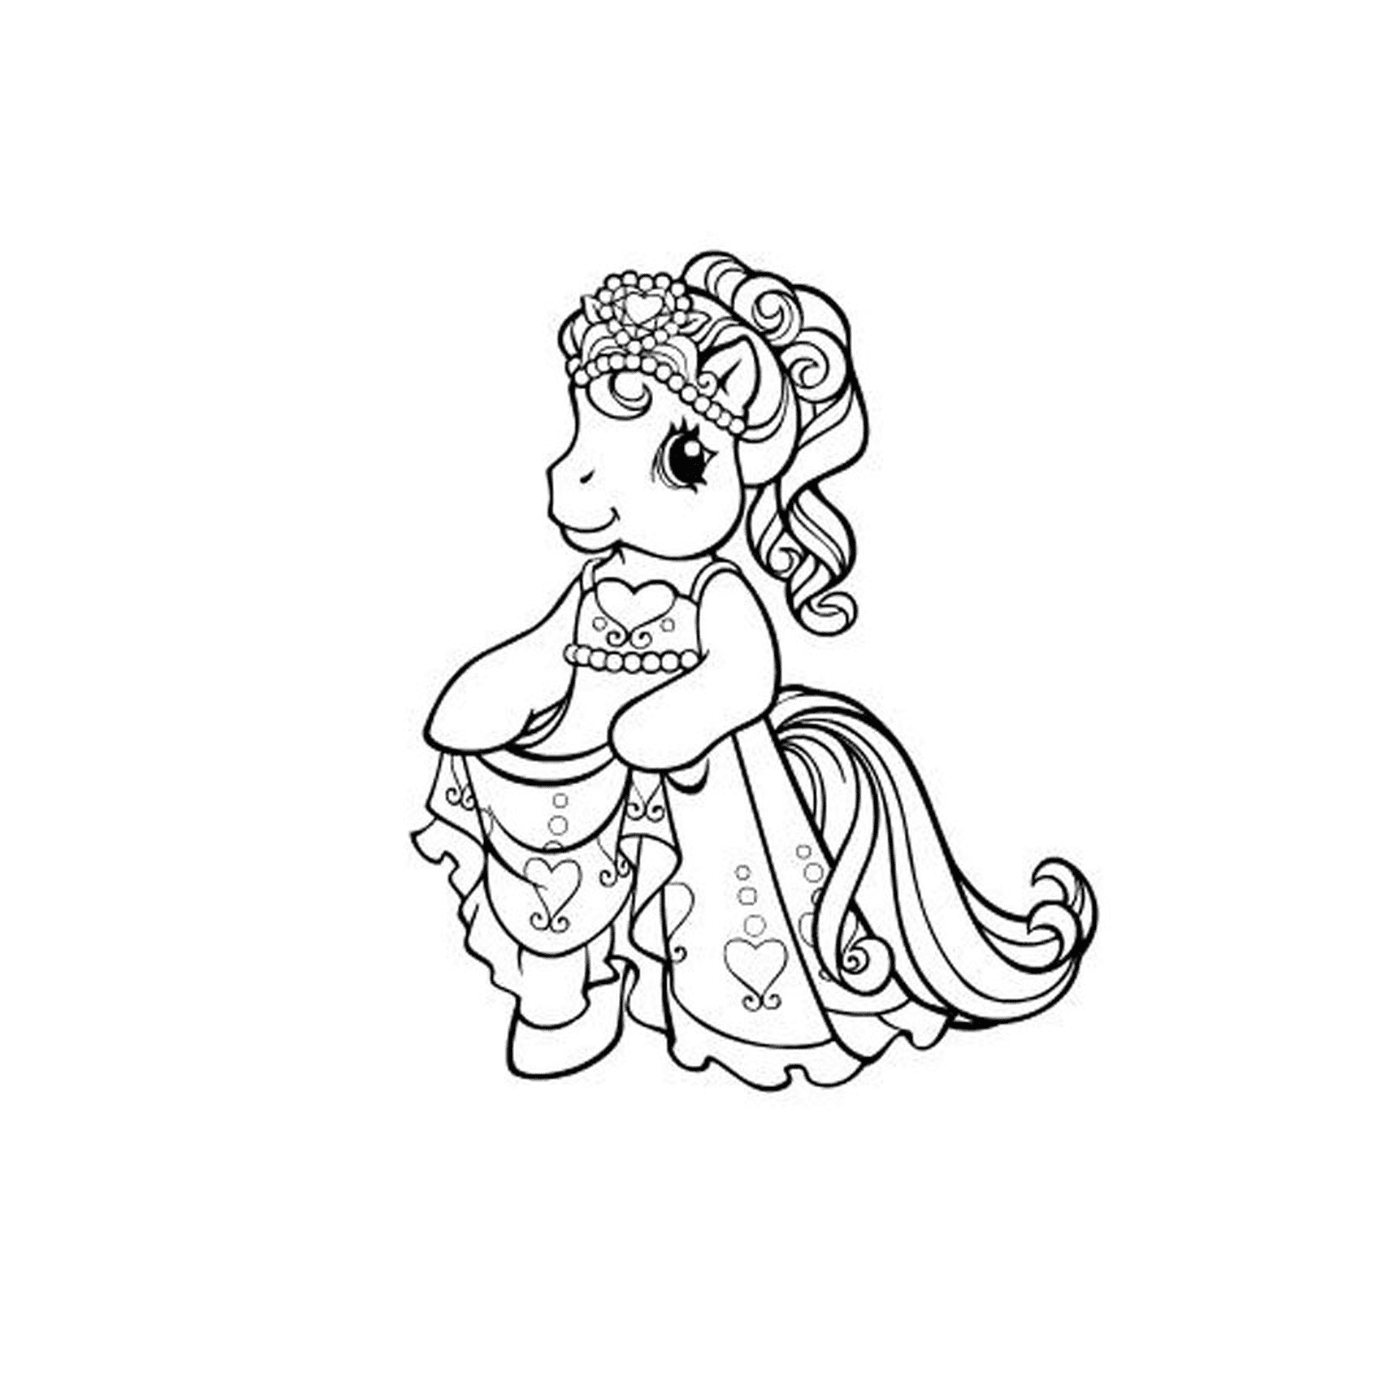  राजकुमारी की पोशाक में छोटी लड़की 